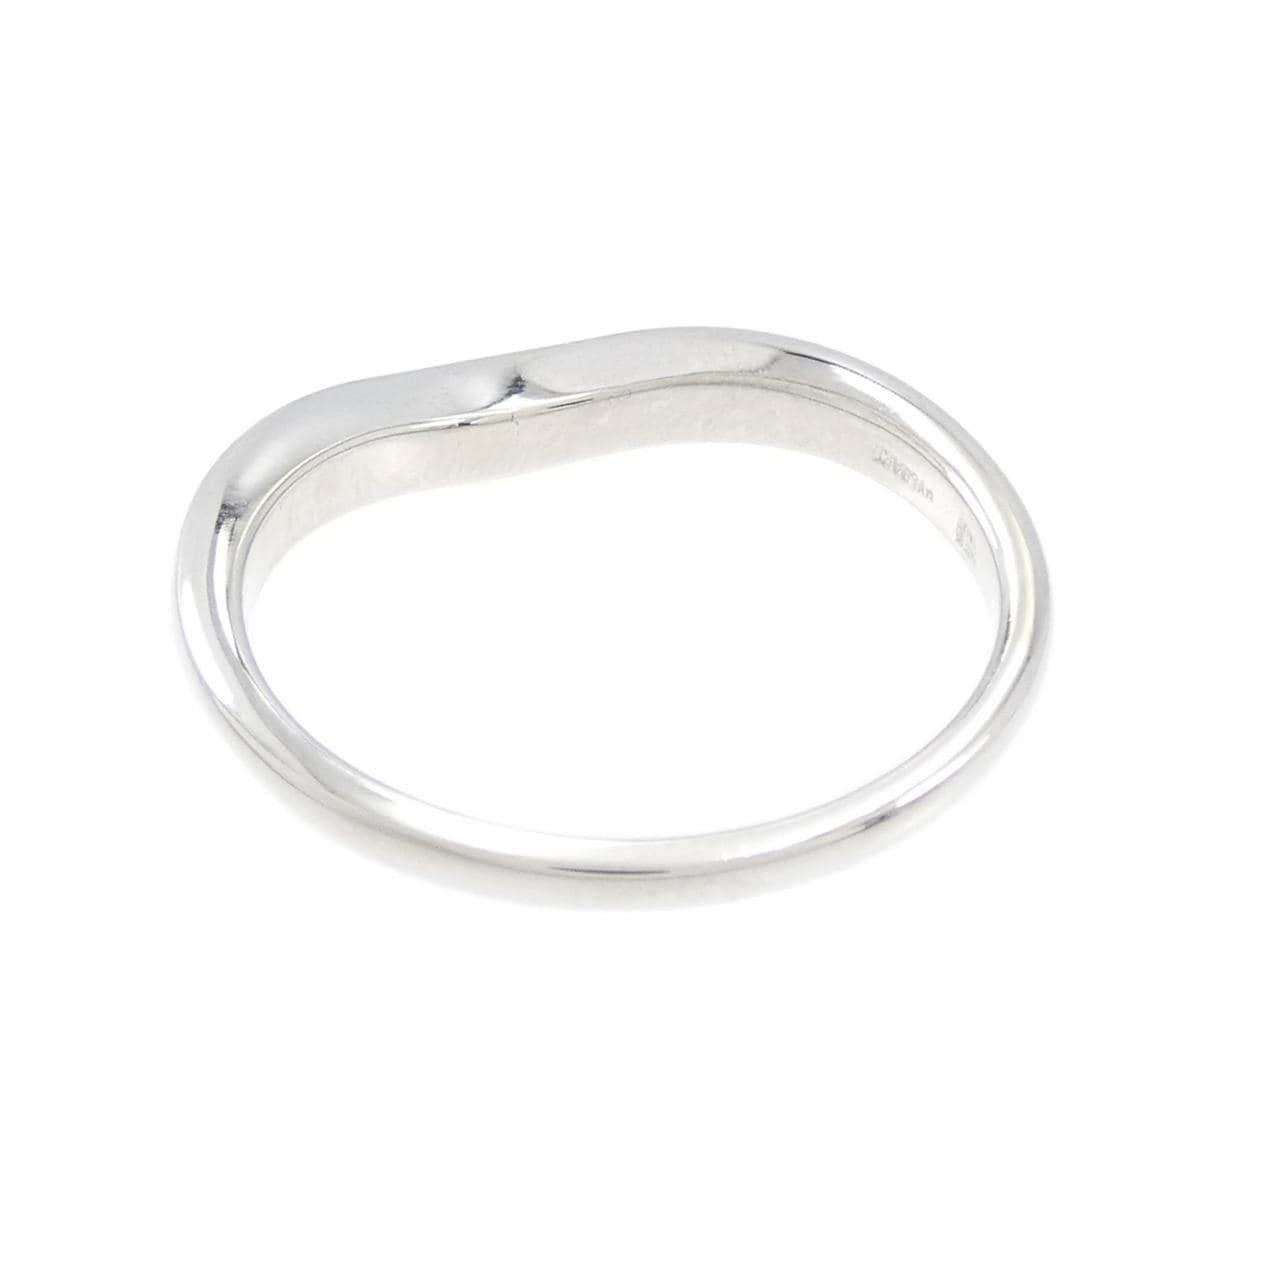 BVLGARI wedding ring